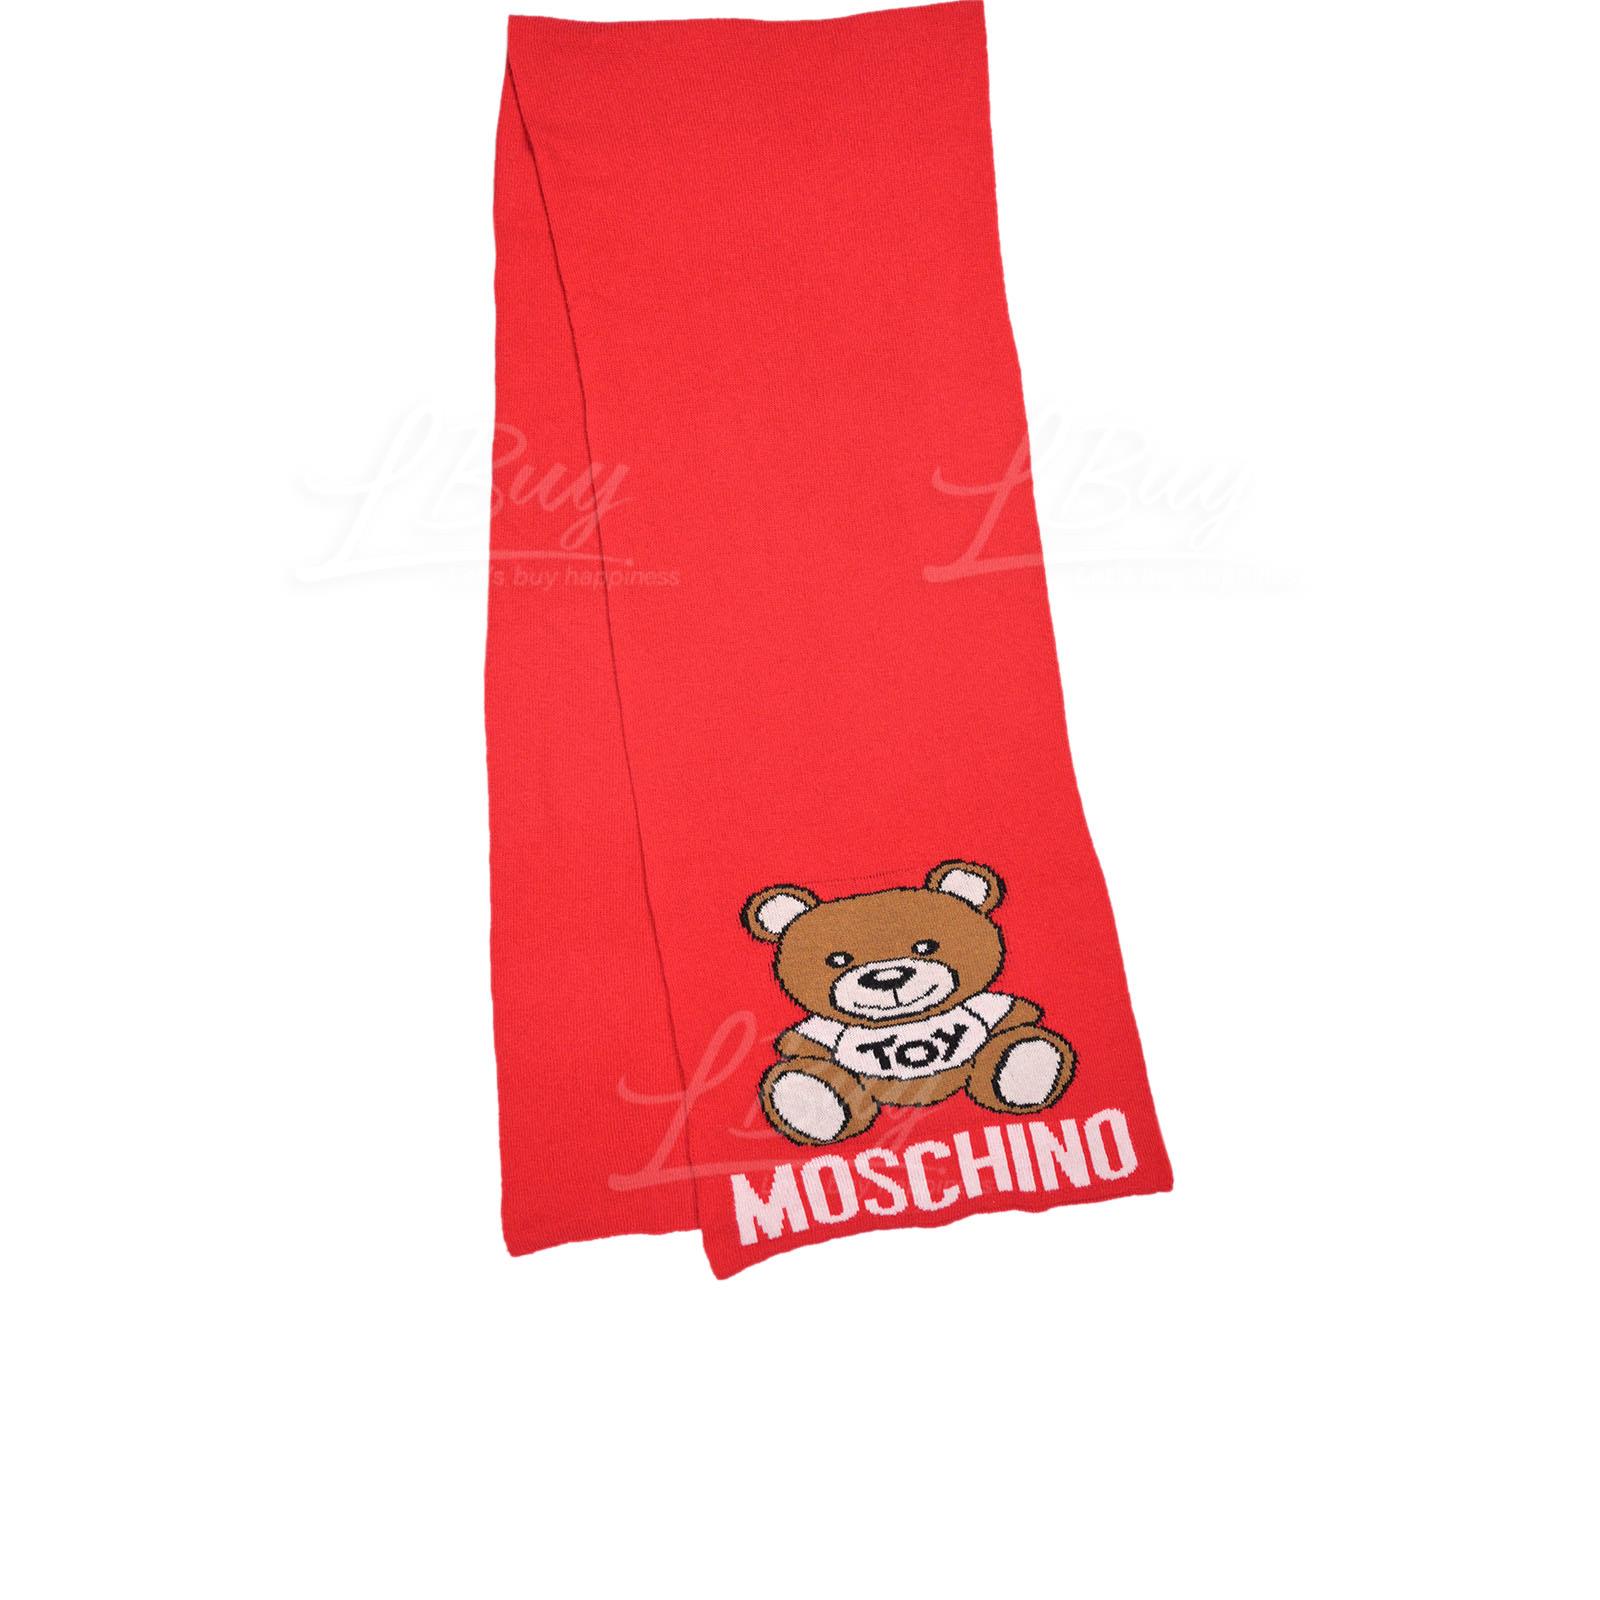 Moschino 大泰迪熊大红色围巾